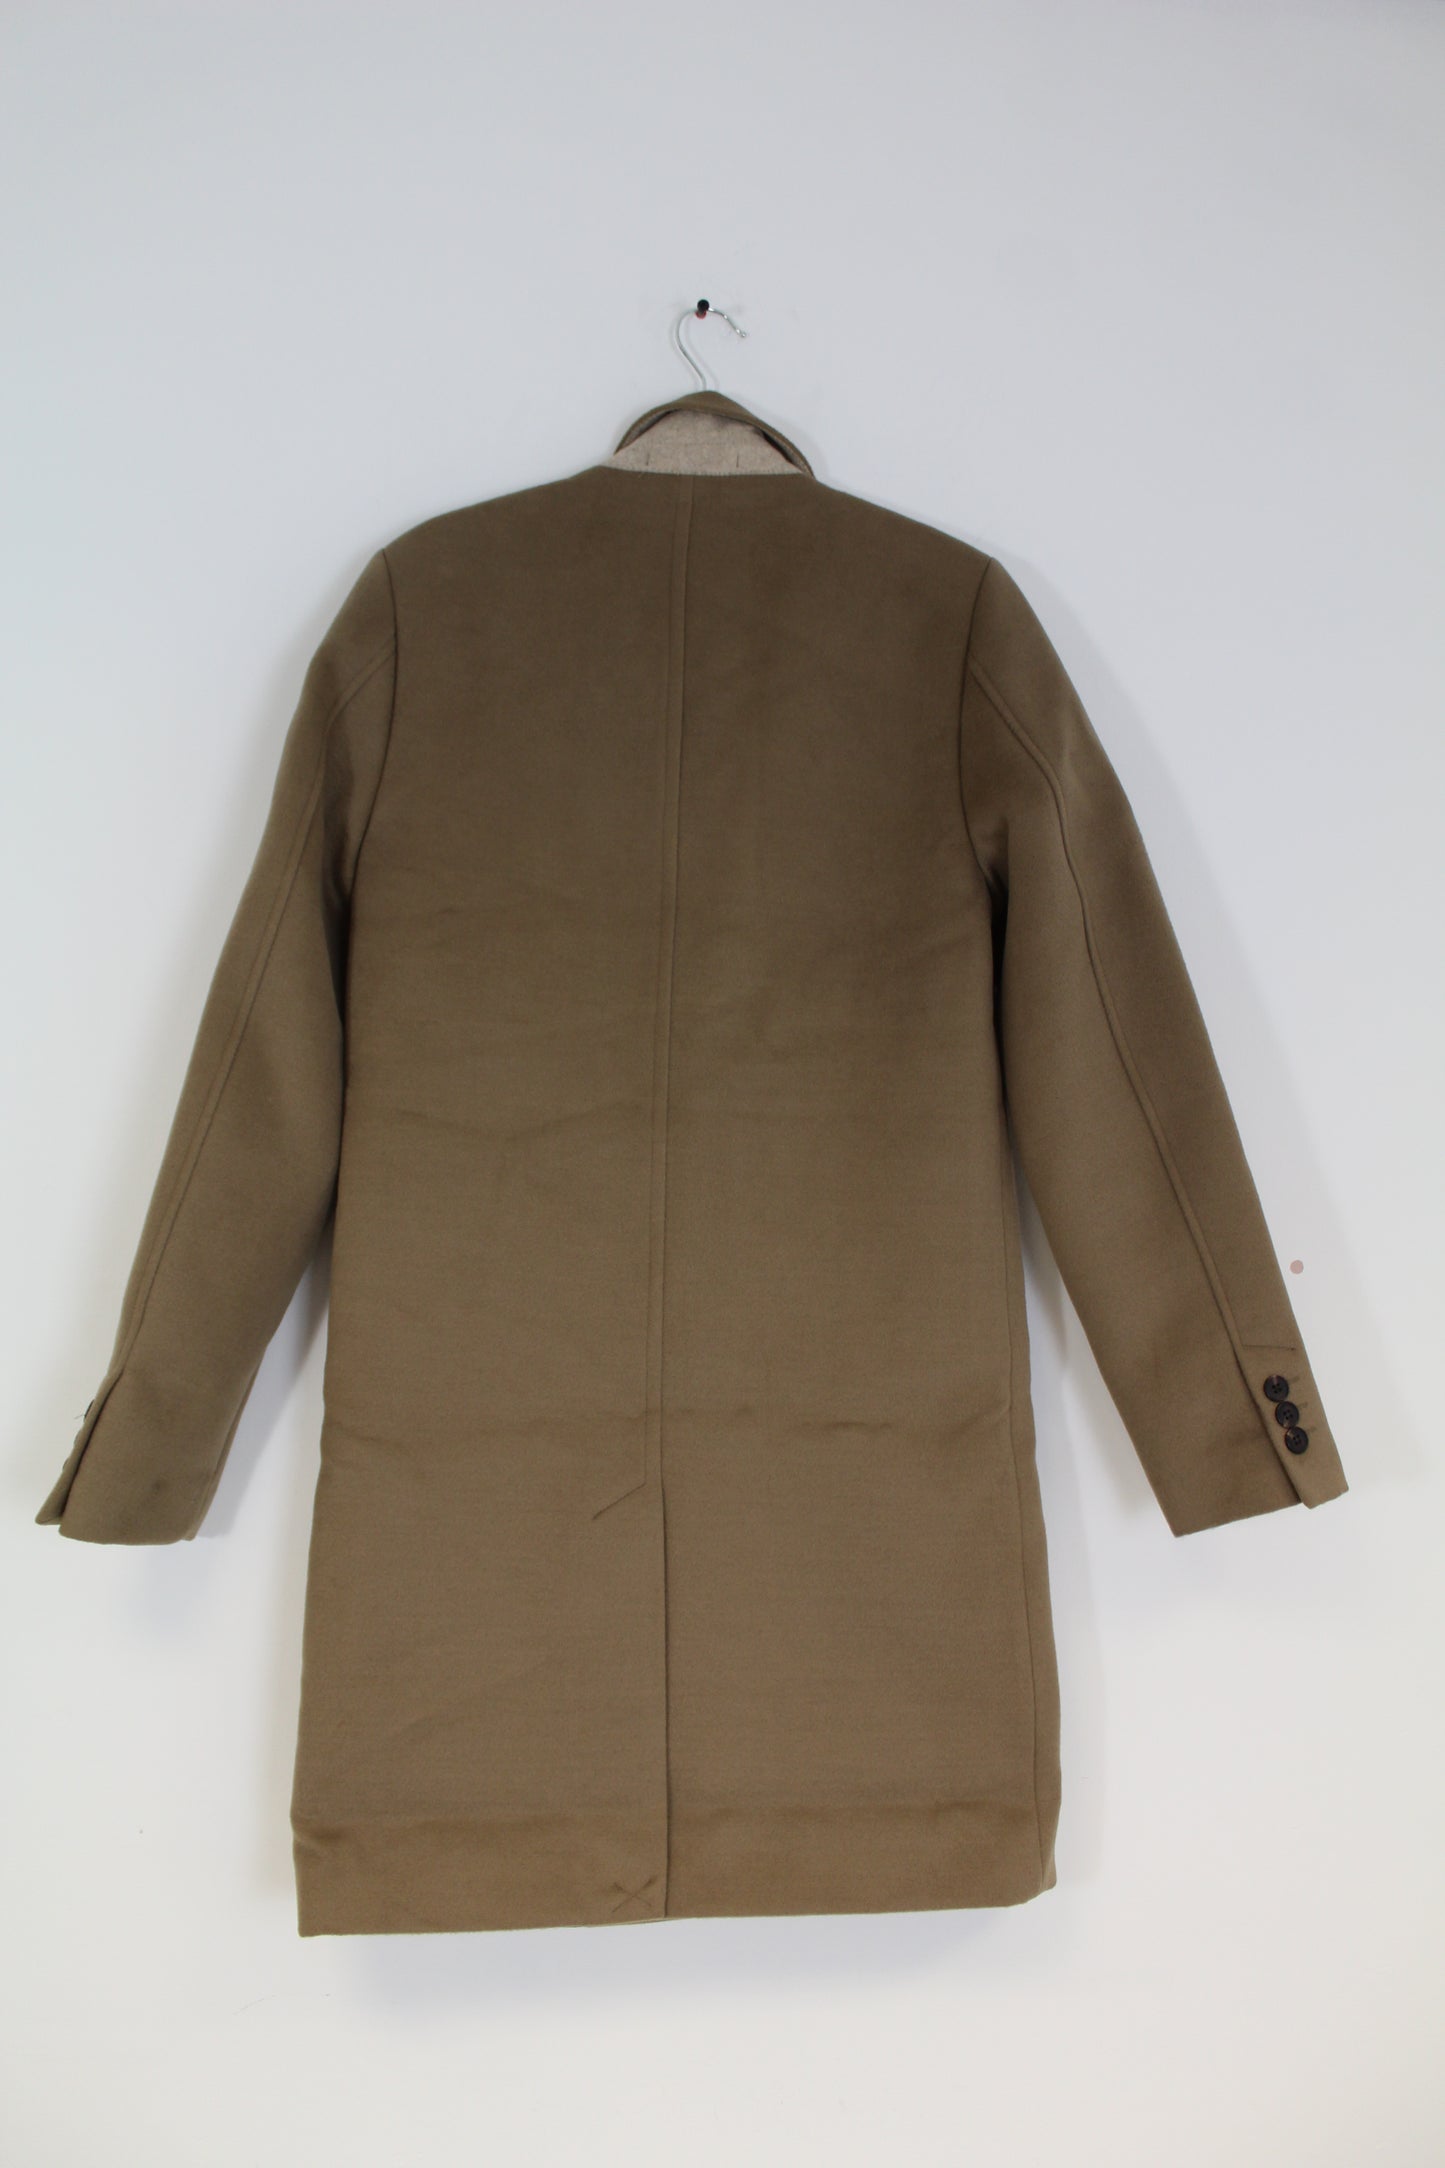 Men's Formal Brown Coat